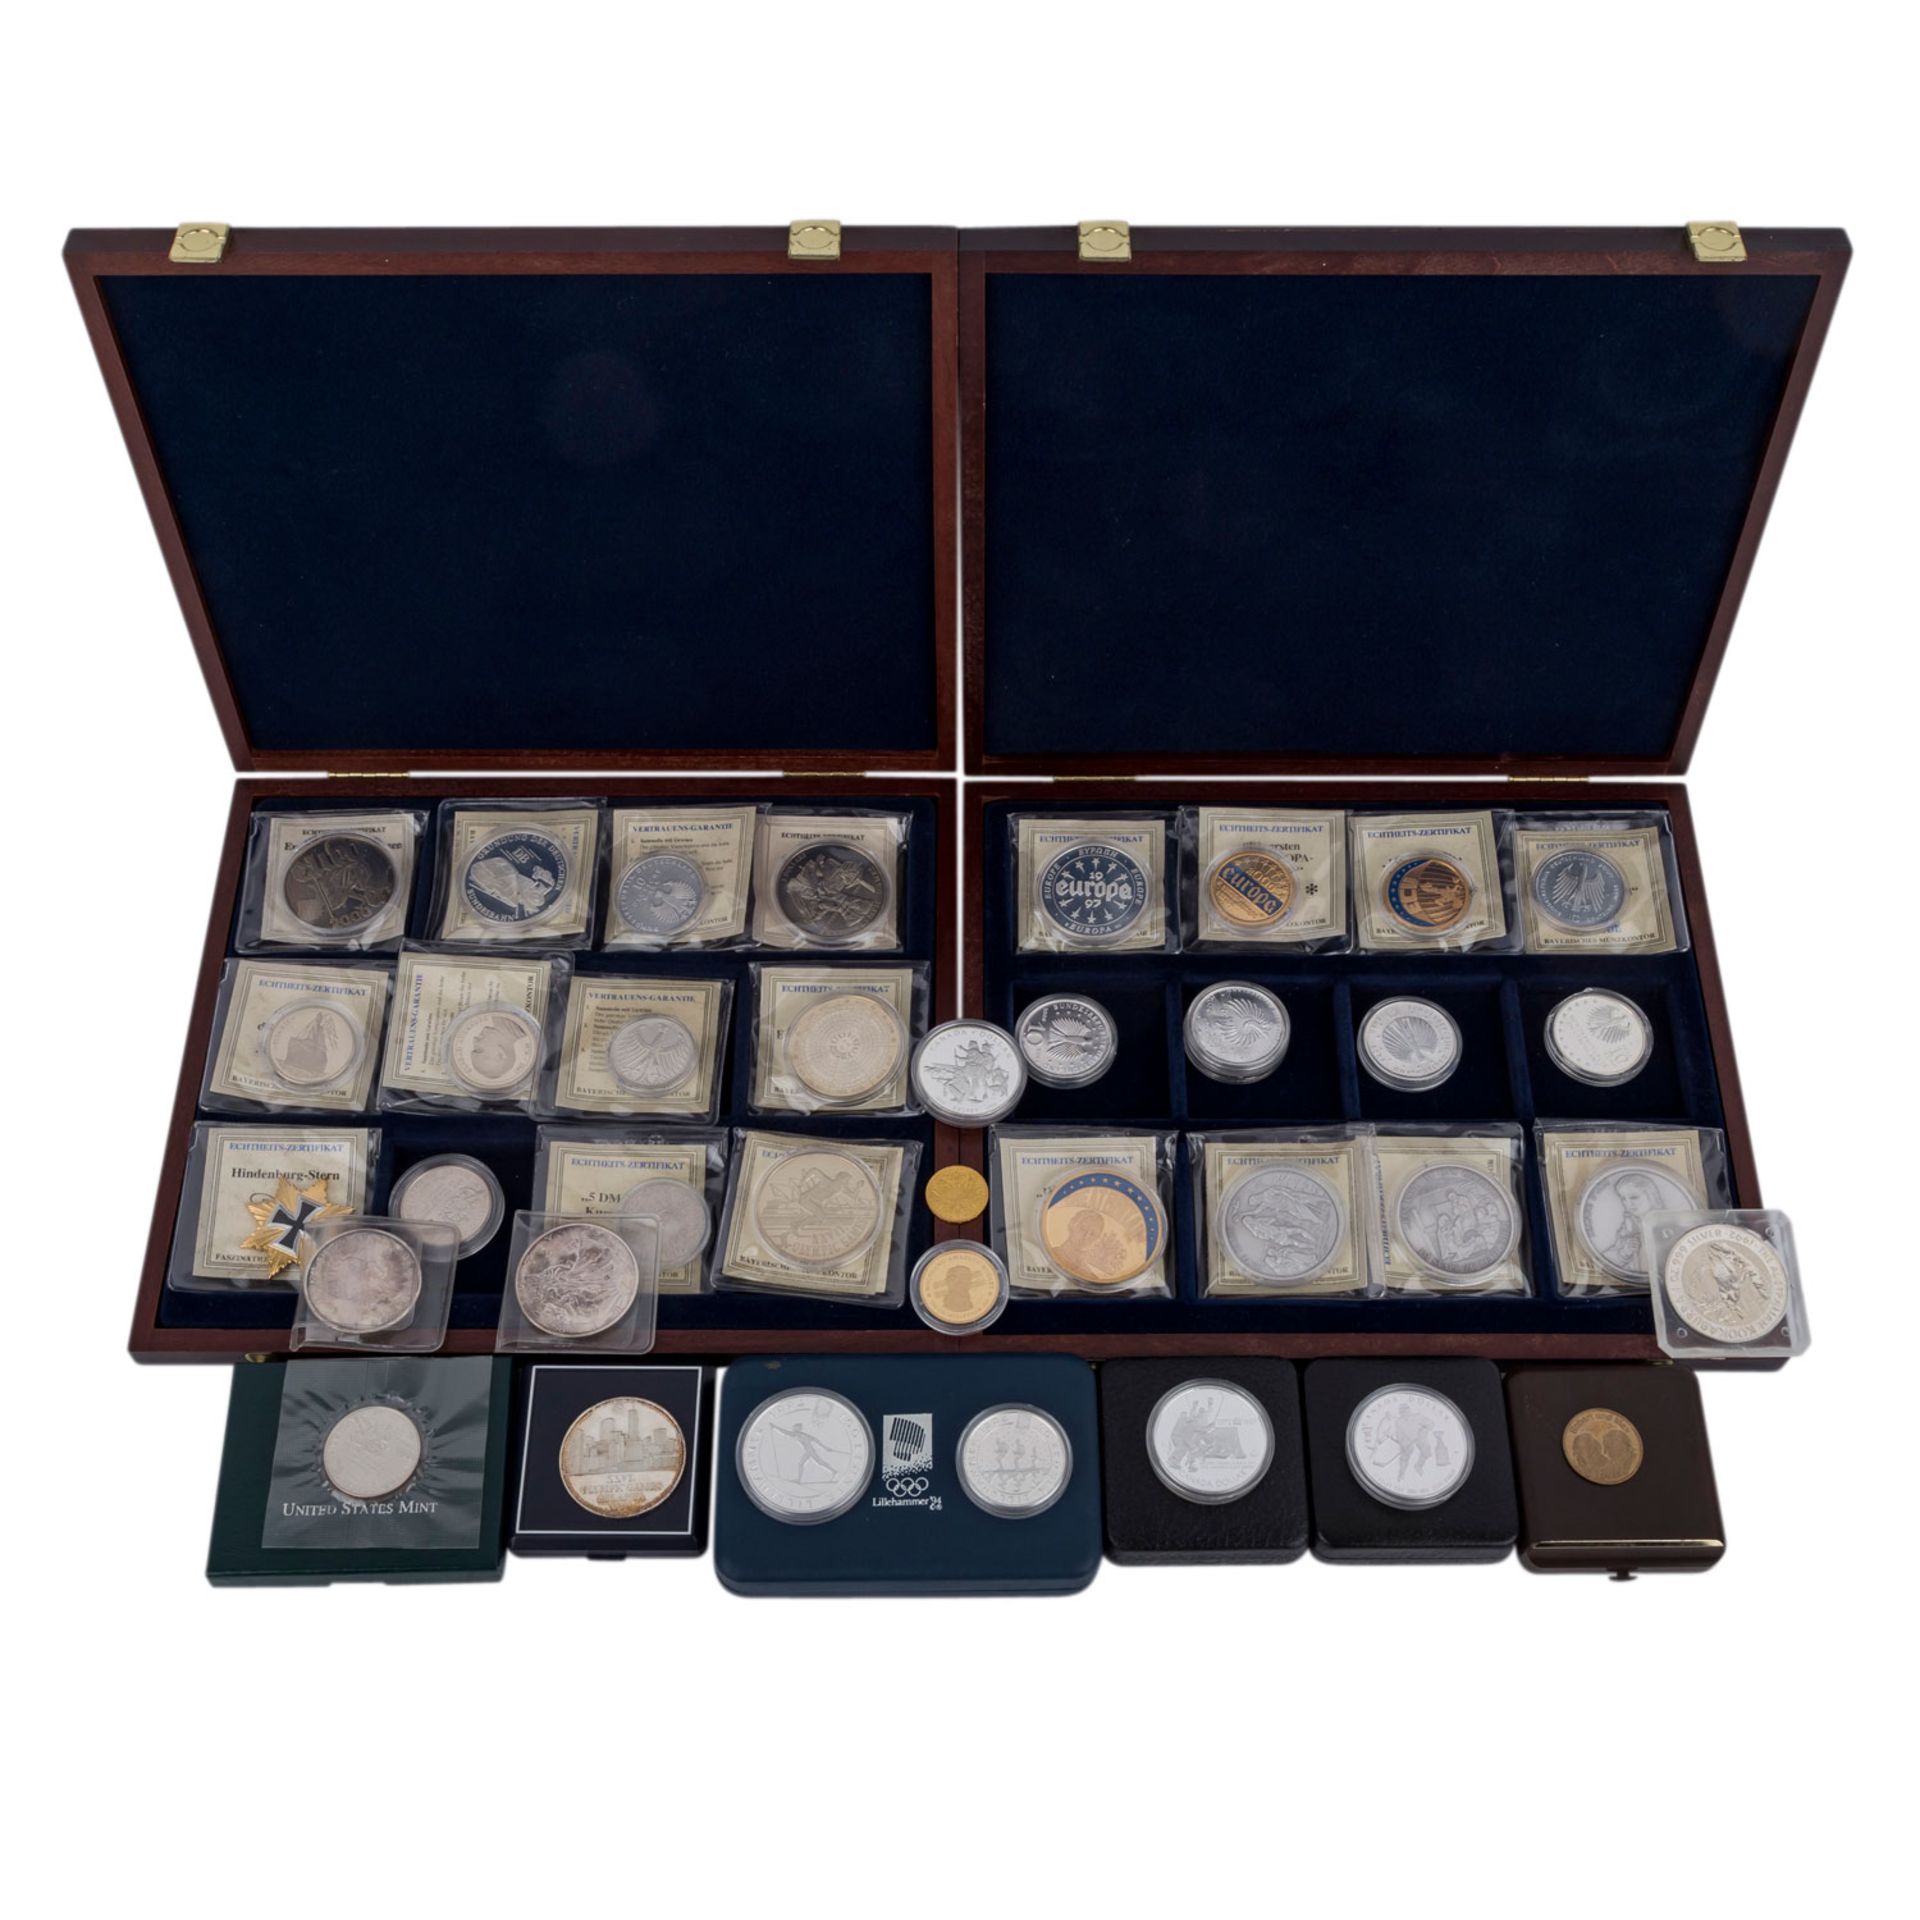 Lot aus diversen Münzen und Medaillen,mit Anteil Gold in der Form von Medaille 6,2 g fein "Mozart"